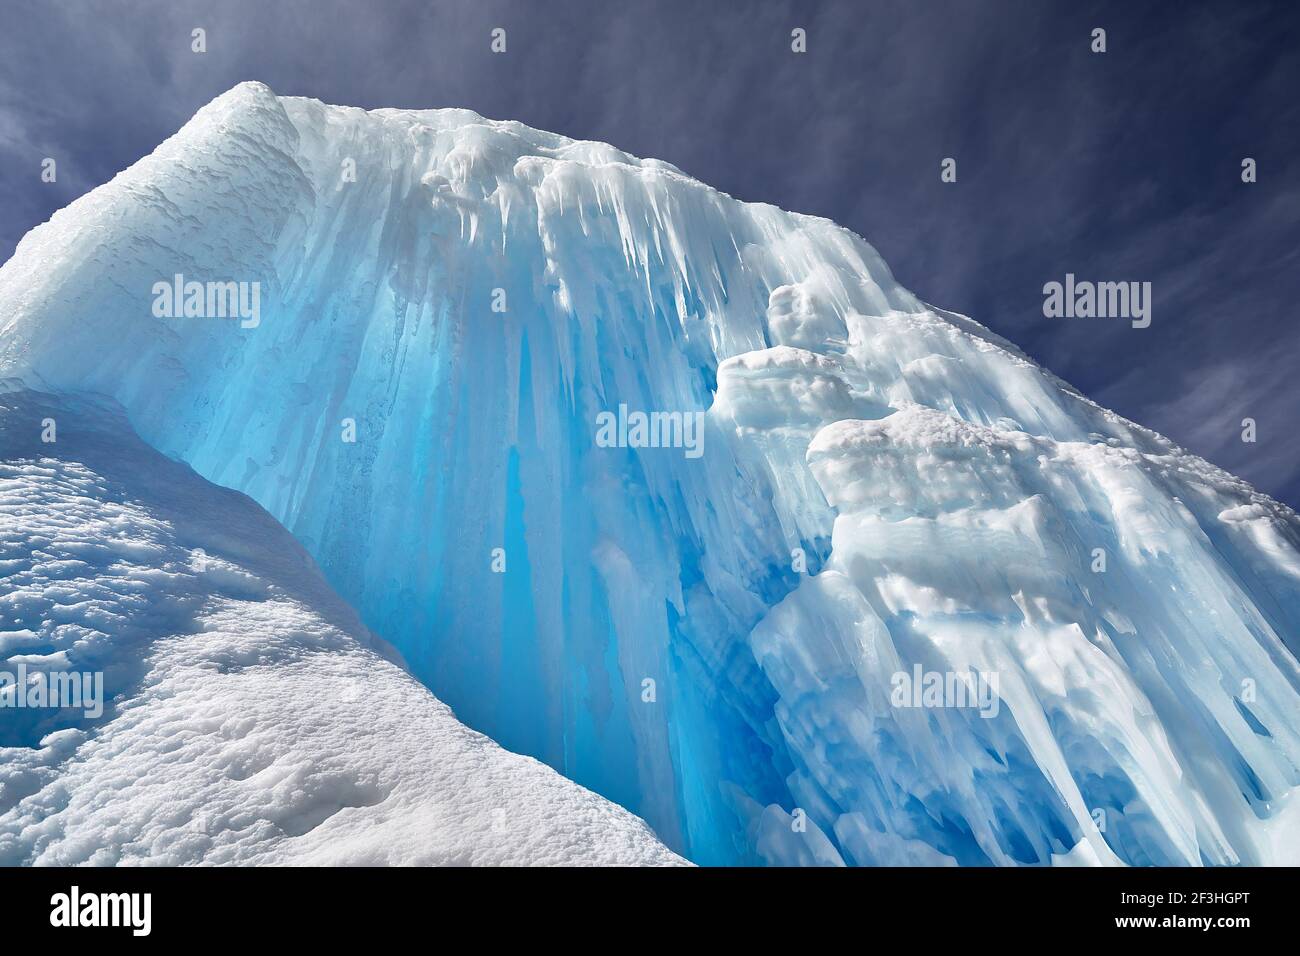 Chute d'eau de montagne gelée avec des glaces contre le ciel bleu à Almaty, Kazakhstan Banque D'Images